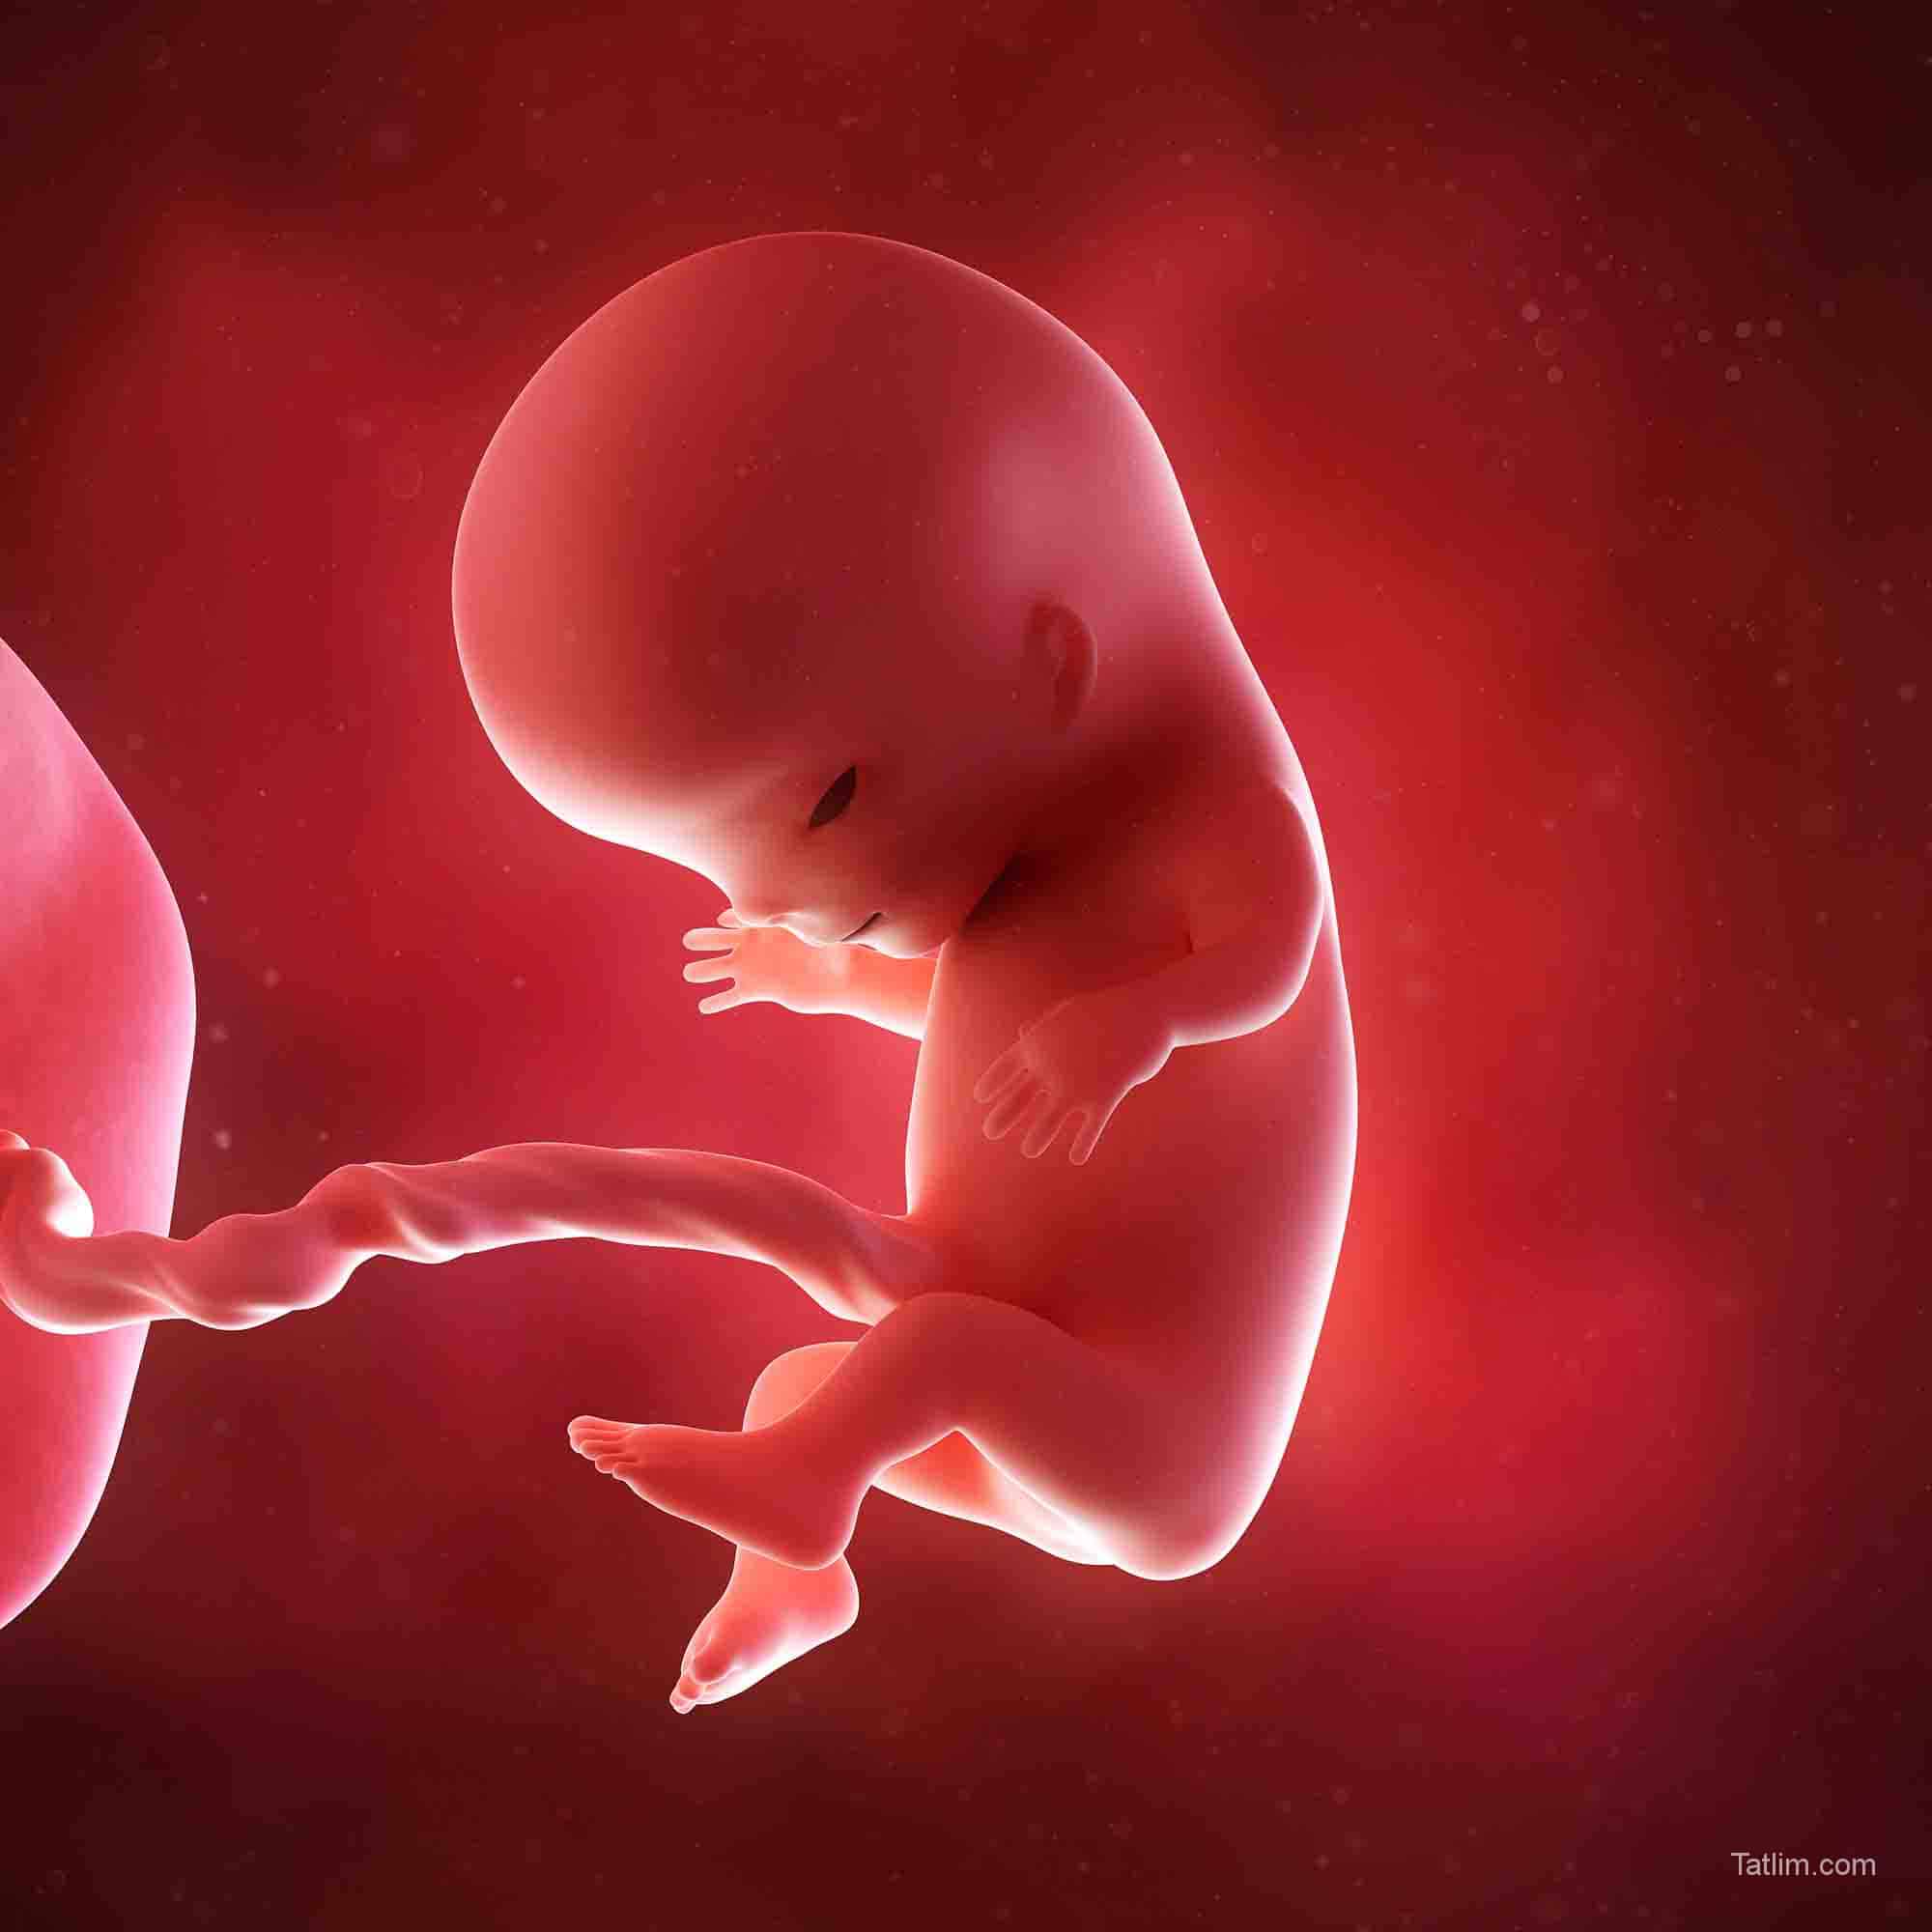 11 недель и 3 дня. Эмбрион на 11 неделе беременности. Ребёнок 11 недель беременности эмбрион. Плод на 11 акушерской неделе беременности. Плод на 11-12 неделе беременности.